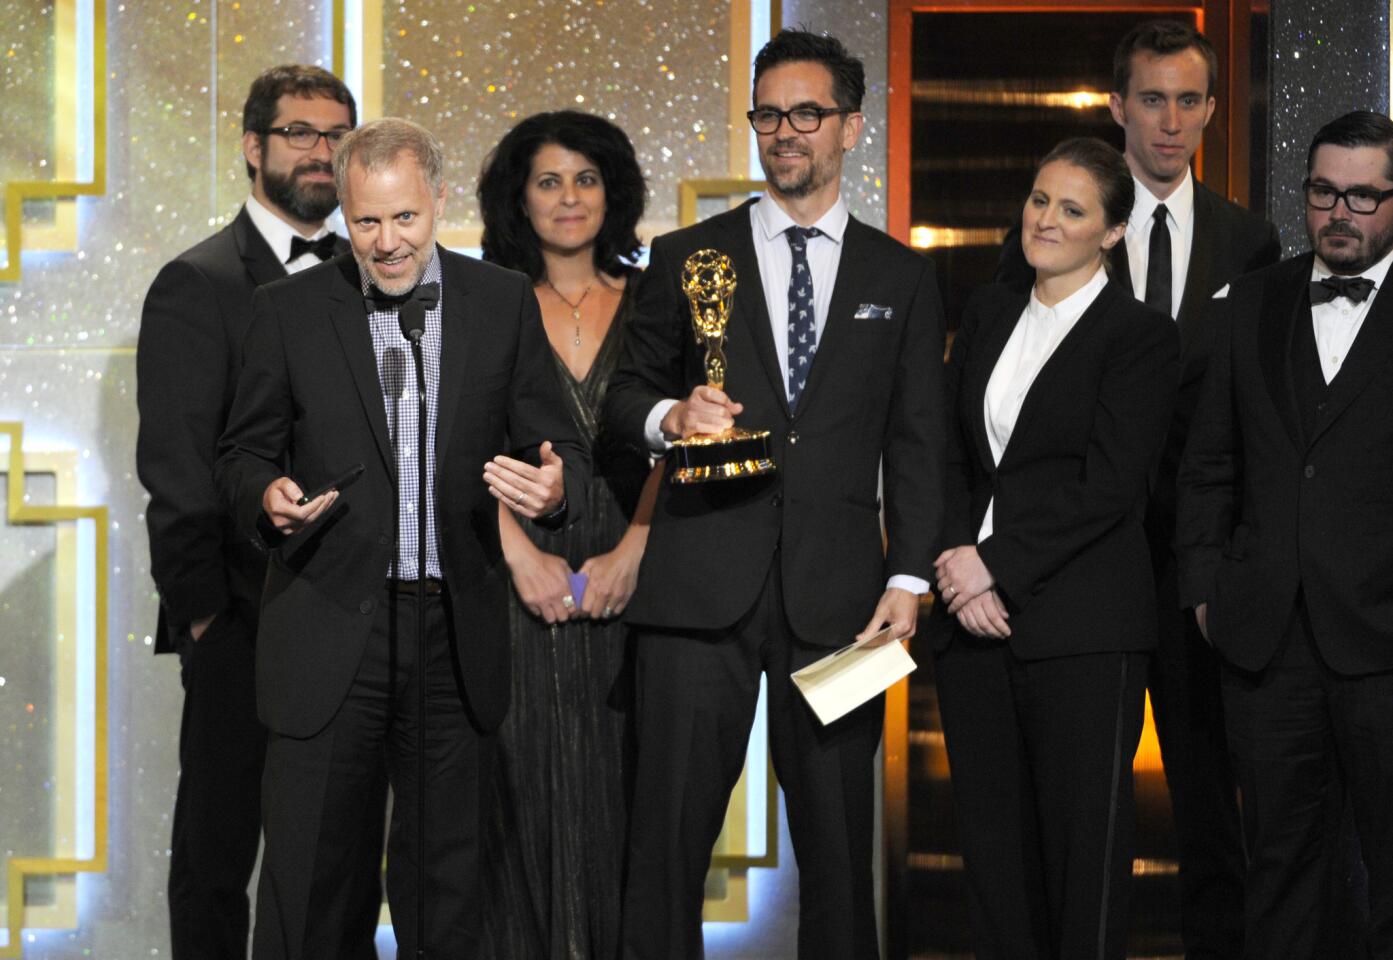 Daytime Emmy Awards